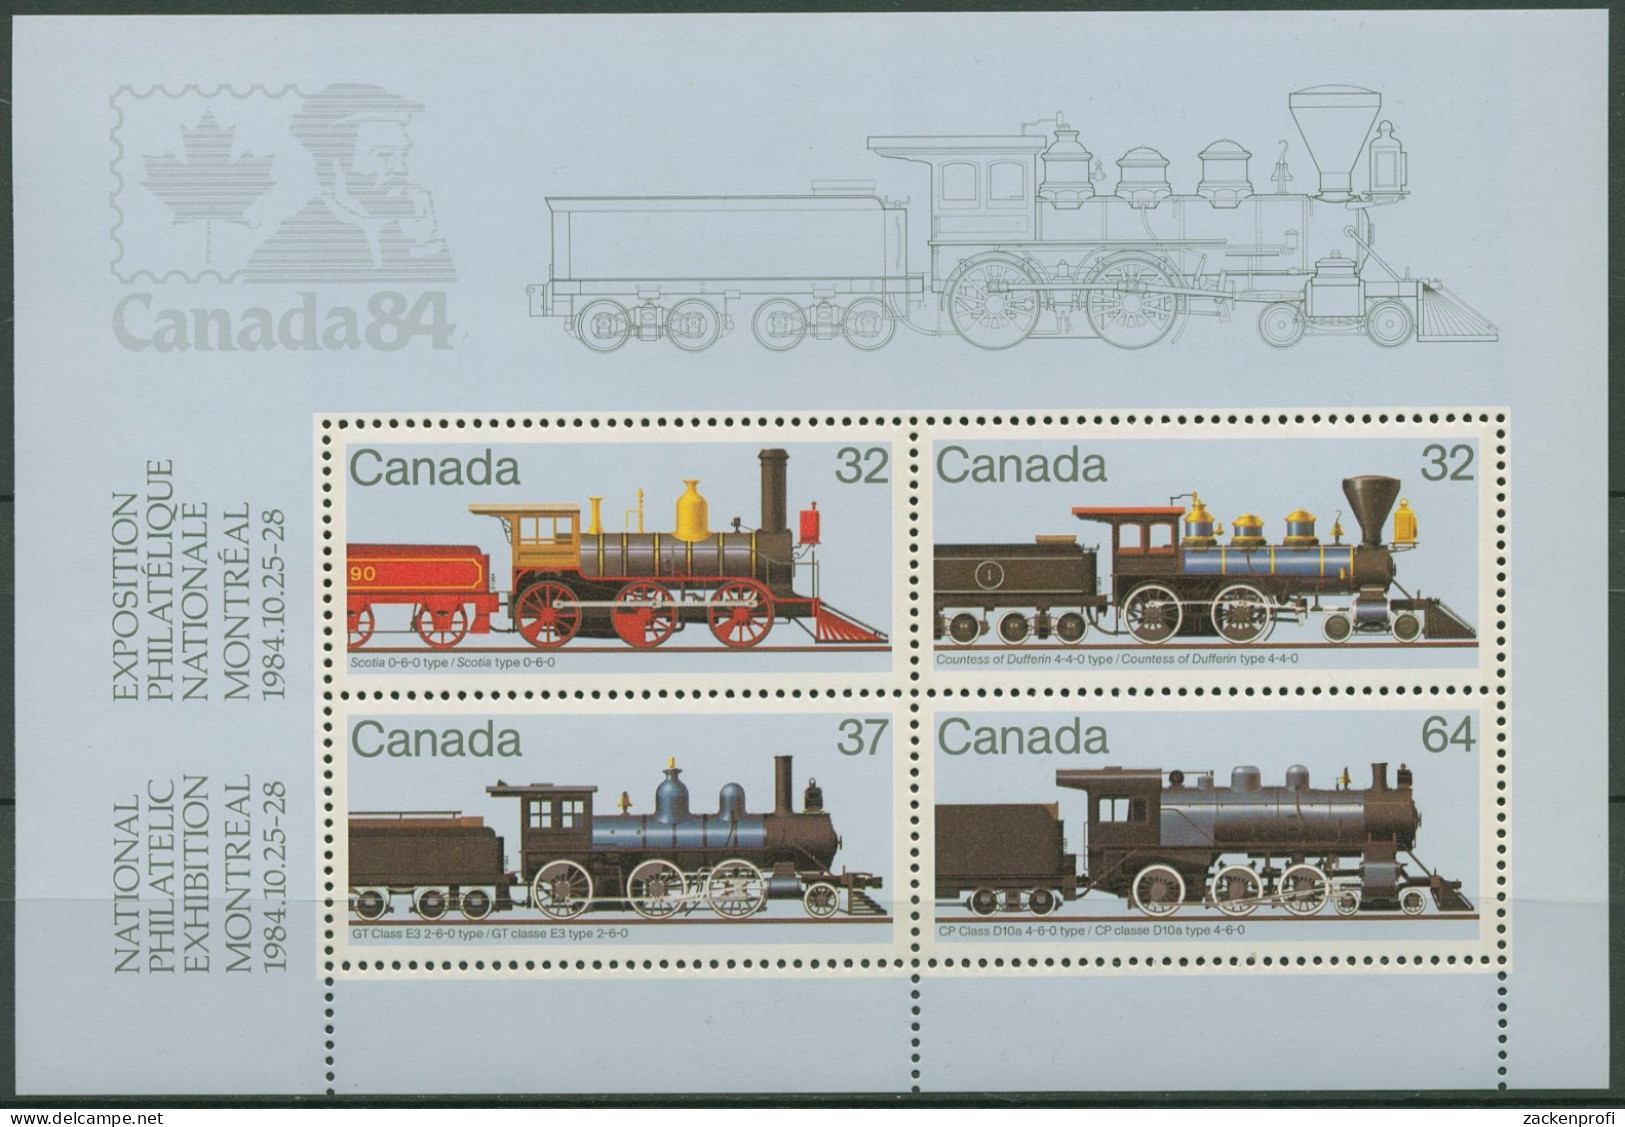 Kanada 1984 Eisenbahn Dampflokomotiven Block 3 Postfrisch (C93901) - Hojas Bloque